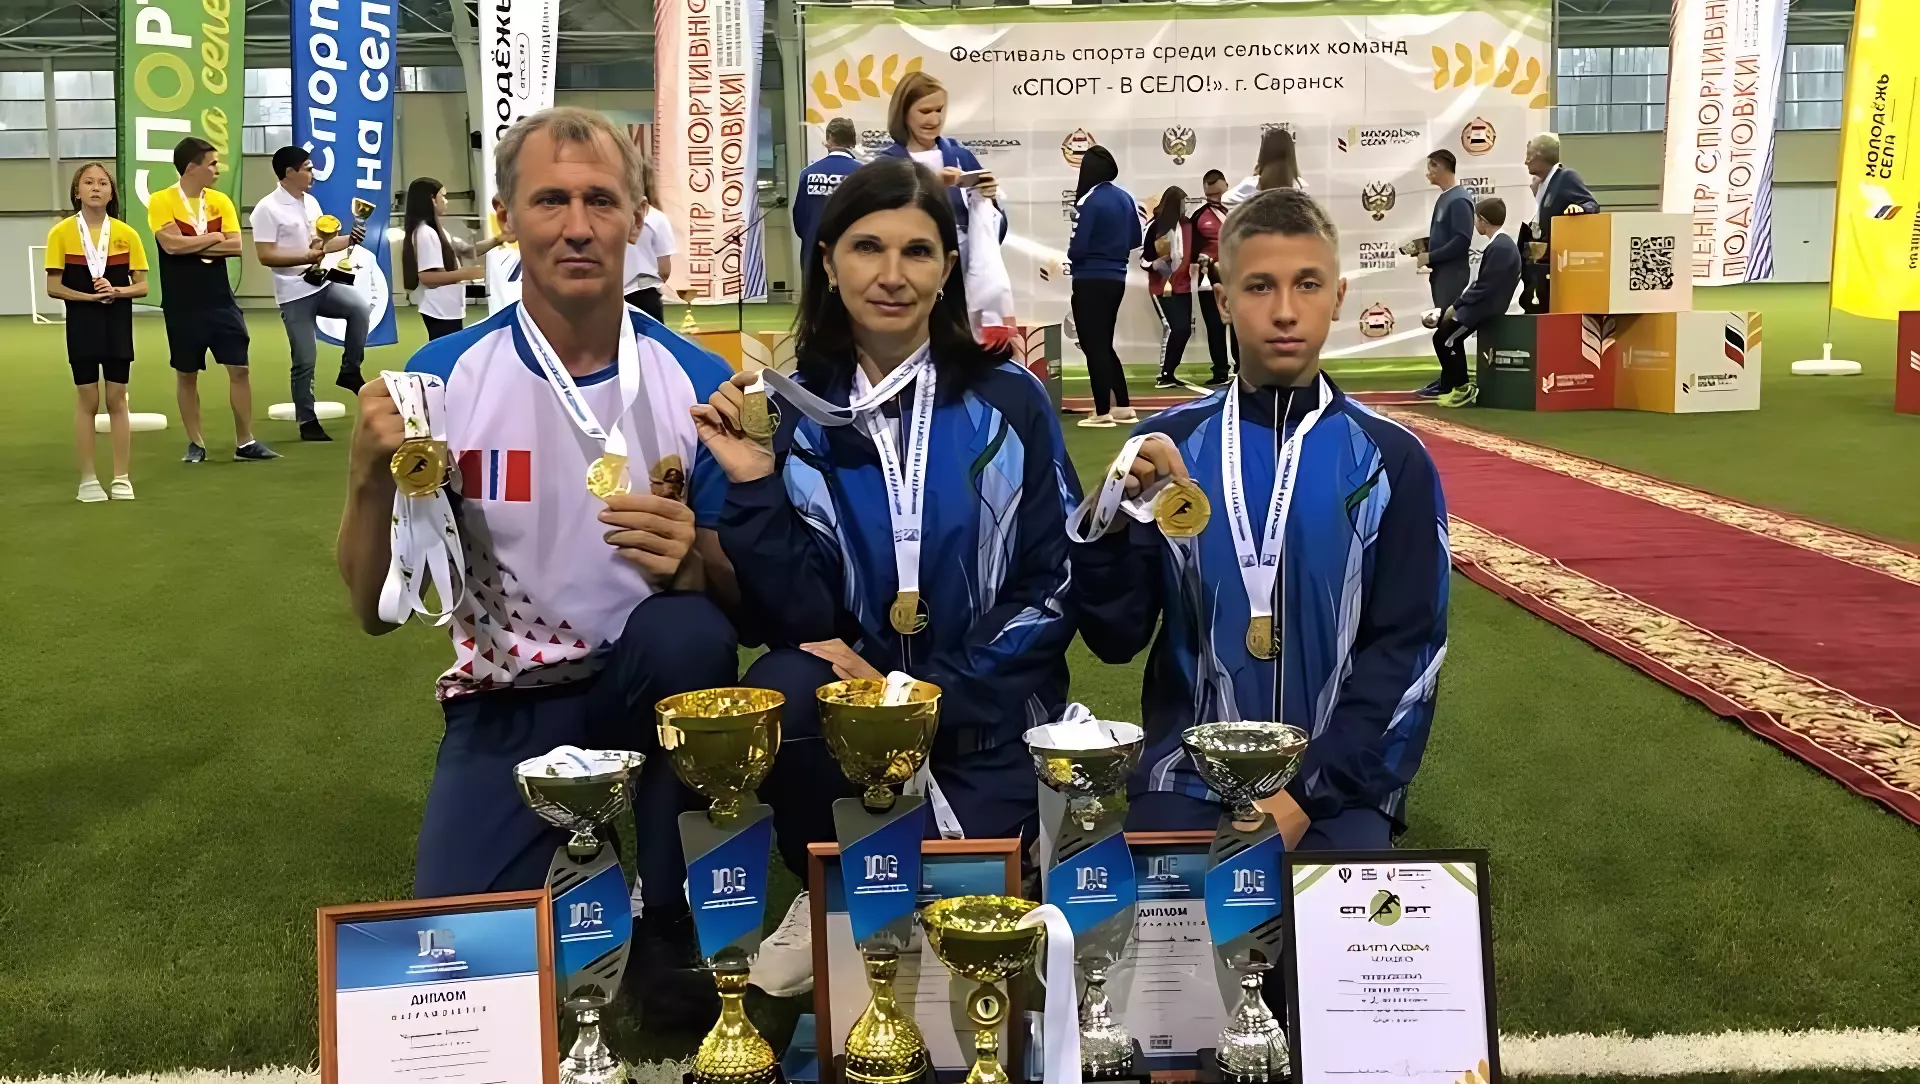 Семья из Омского района выиграла шесть кубков на Всероссийском фестивале спорта